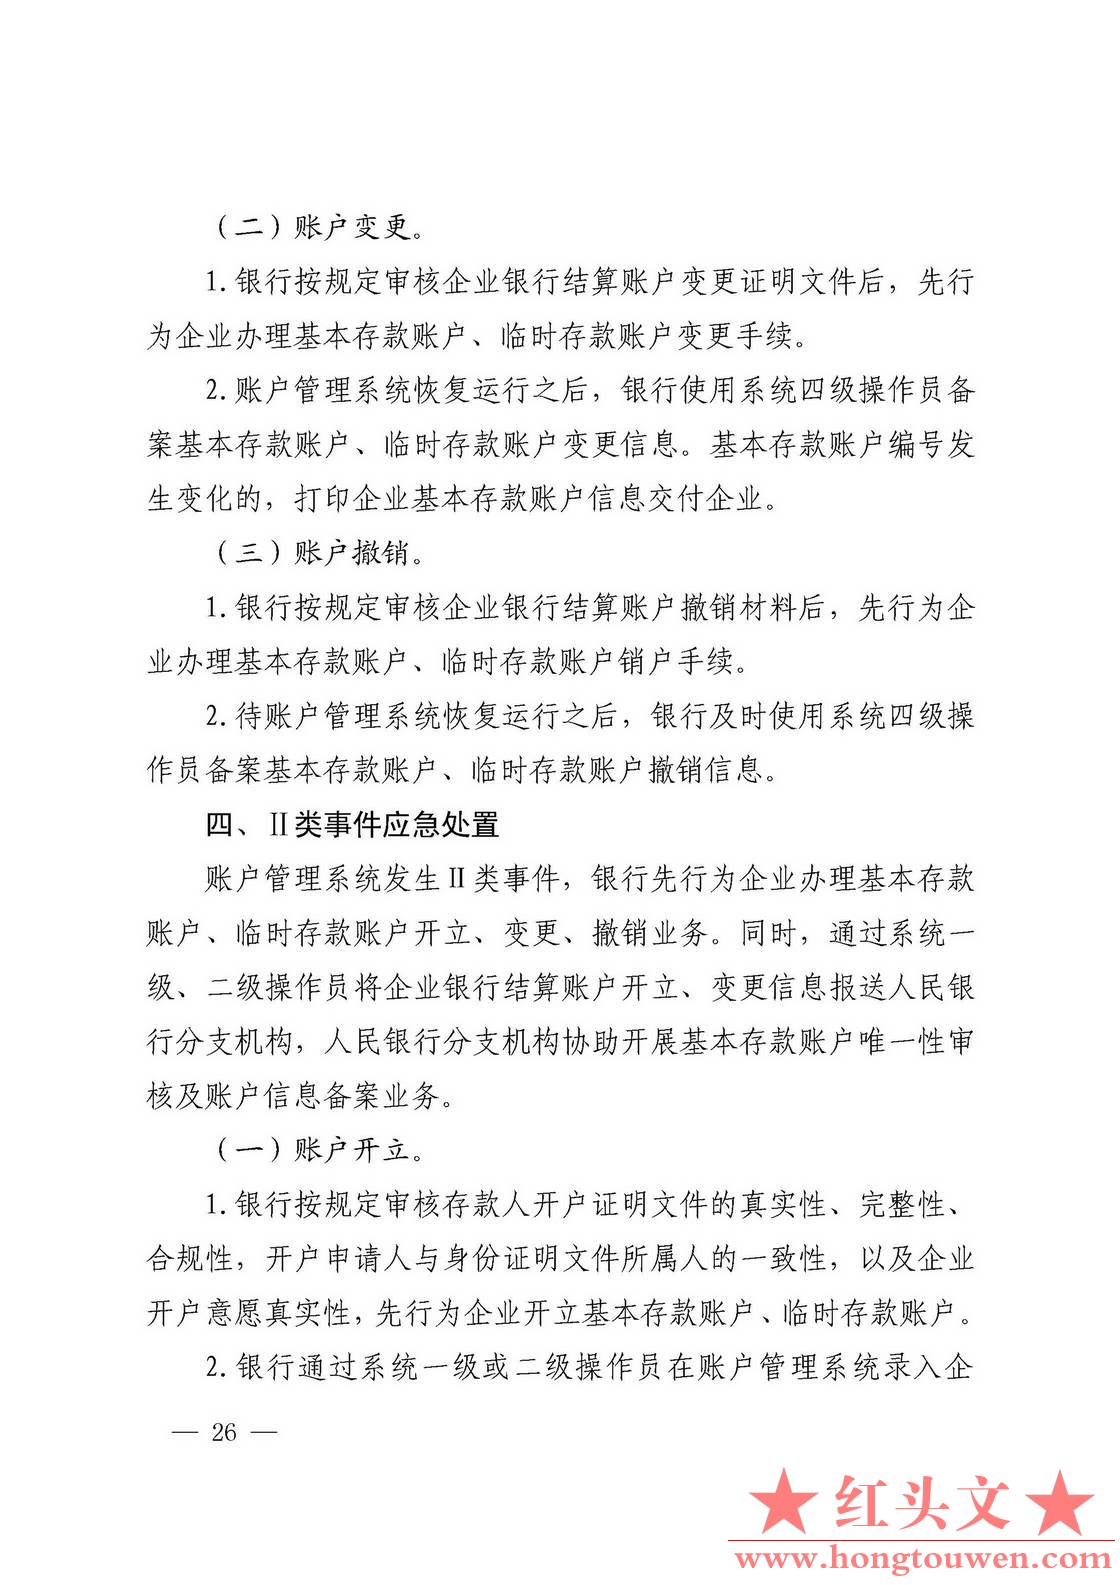 银发[2019]41号-中国人民银行关于取消企业银行账户许可的通知_页面_26.jpg.jpg